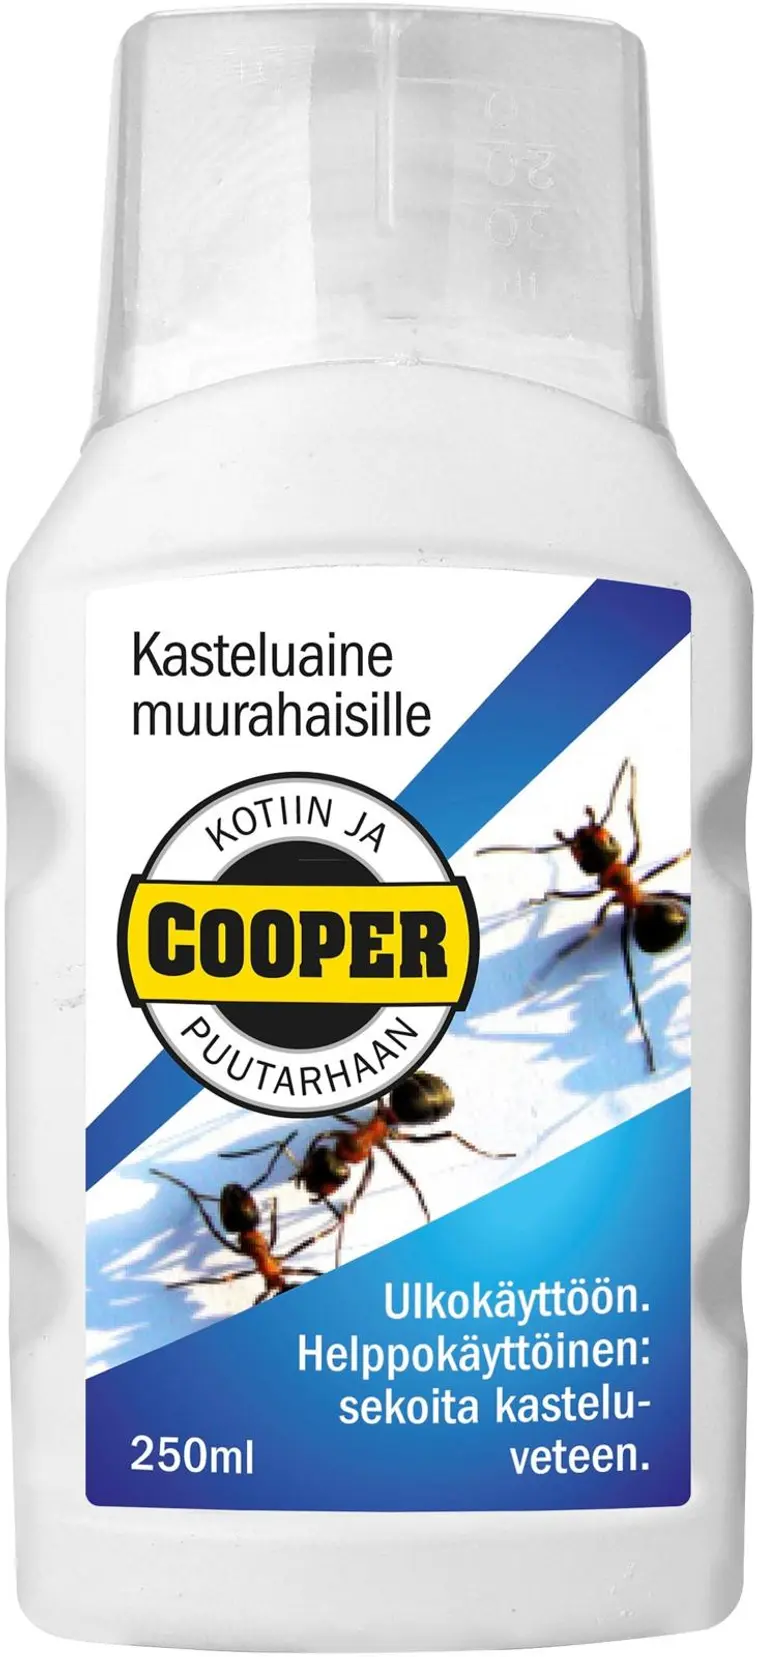 Cooper kasteluaine muurahaisille 250 ml